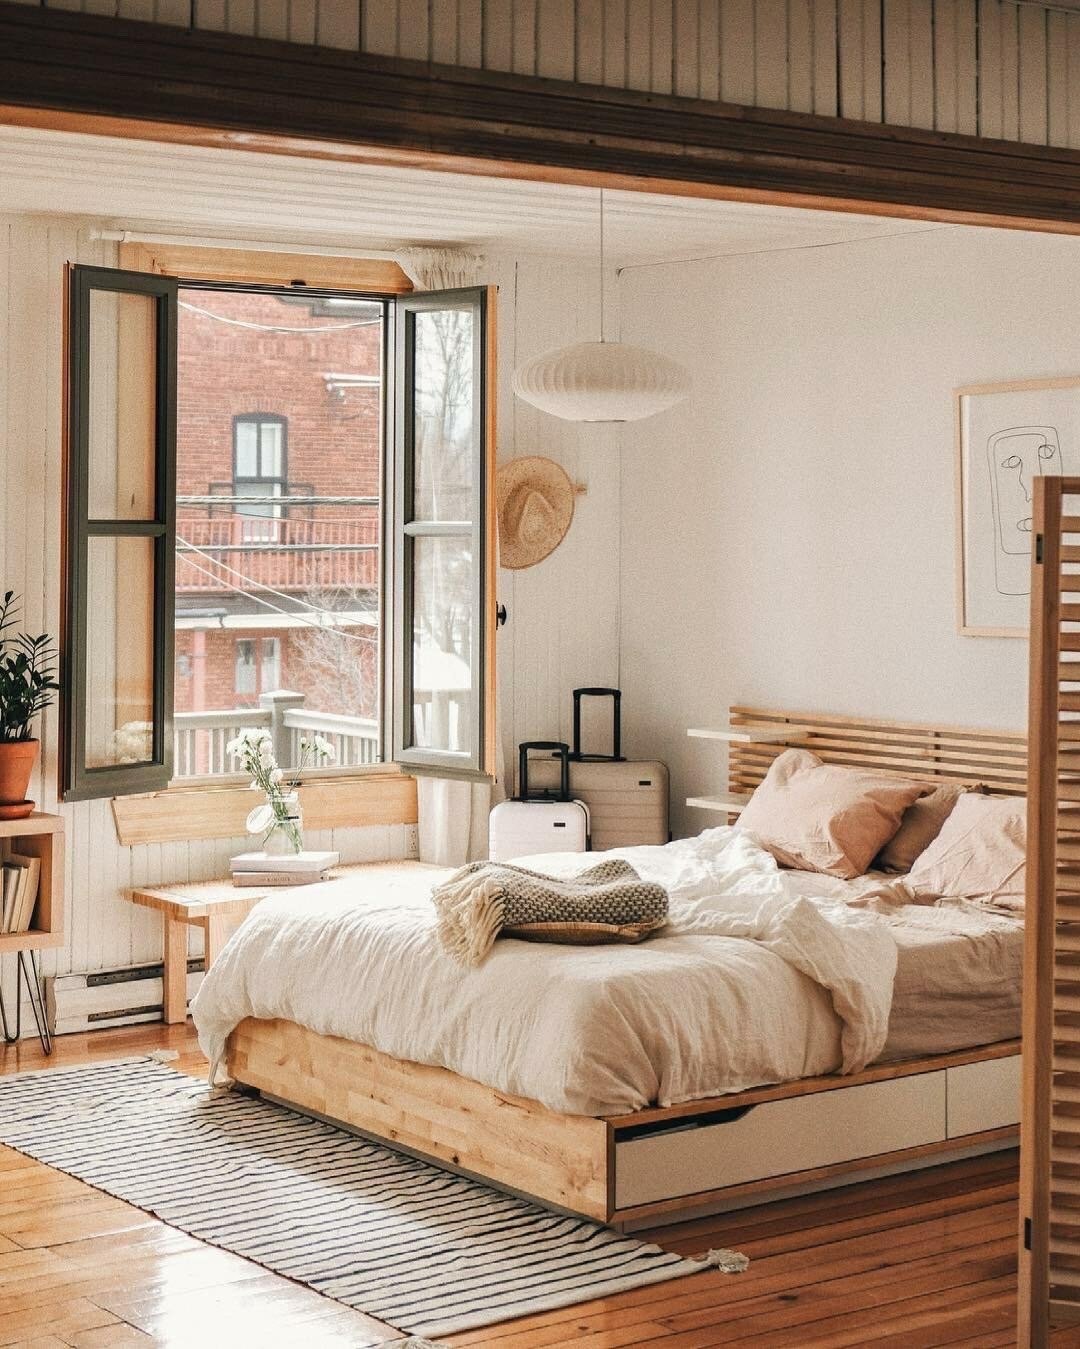 Phòng ngủ dễ thương với thiết kế giường thấp sàn kết hợp ngăn lưu trữ, đầu giường kiểu những thanh lam gỗ kết hợp kệ gắn lên trực tiếp thay cho táp đầu giường quen thuộc.